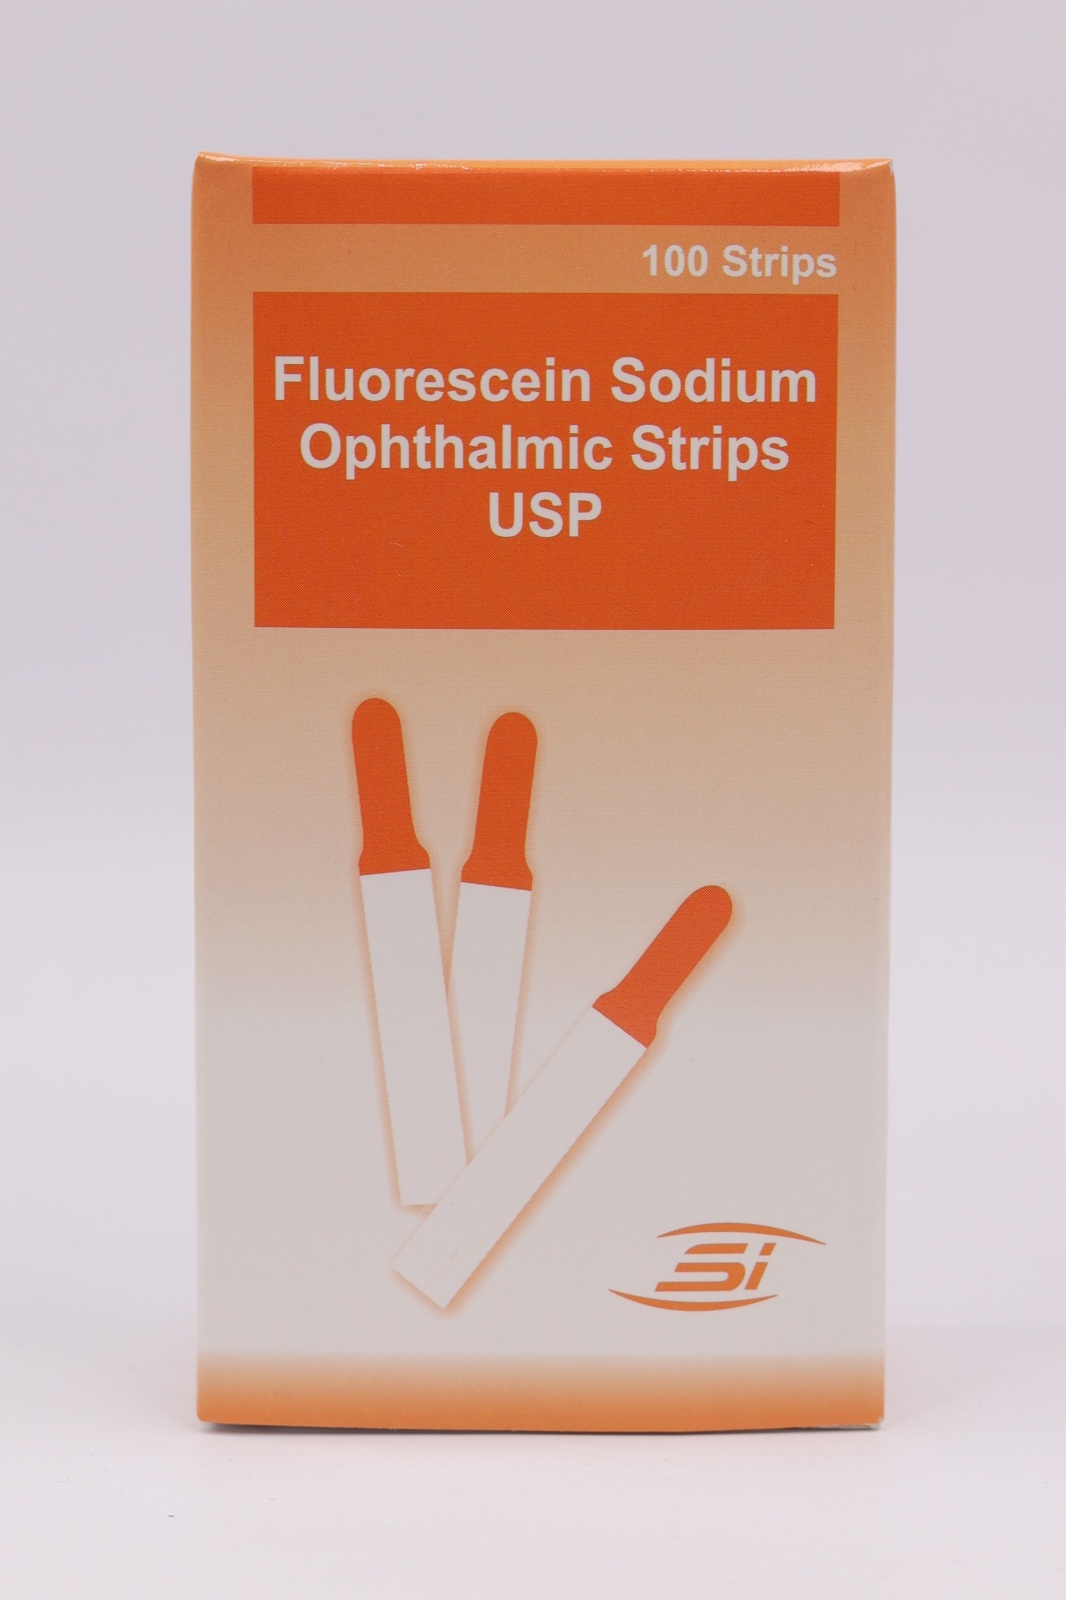 Fluorescein Sodium Strips